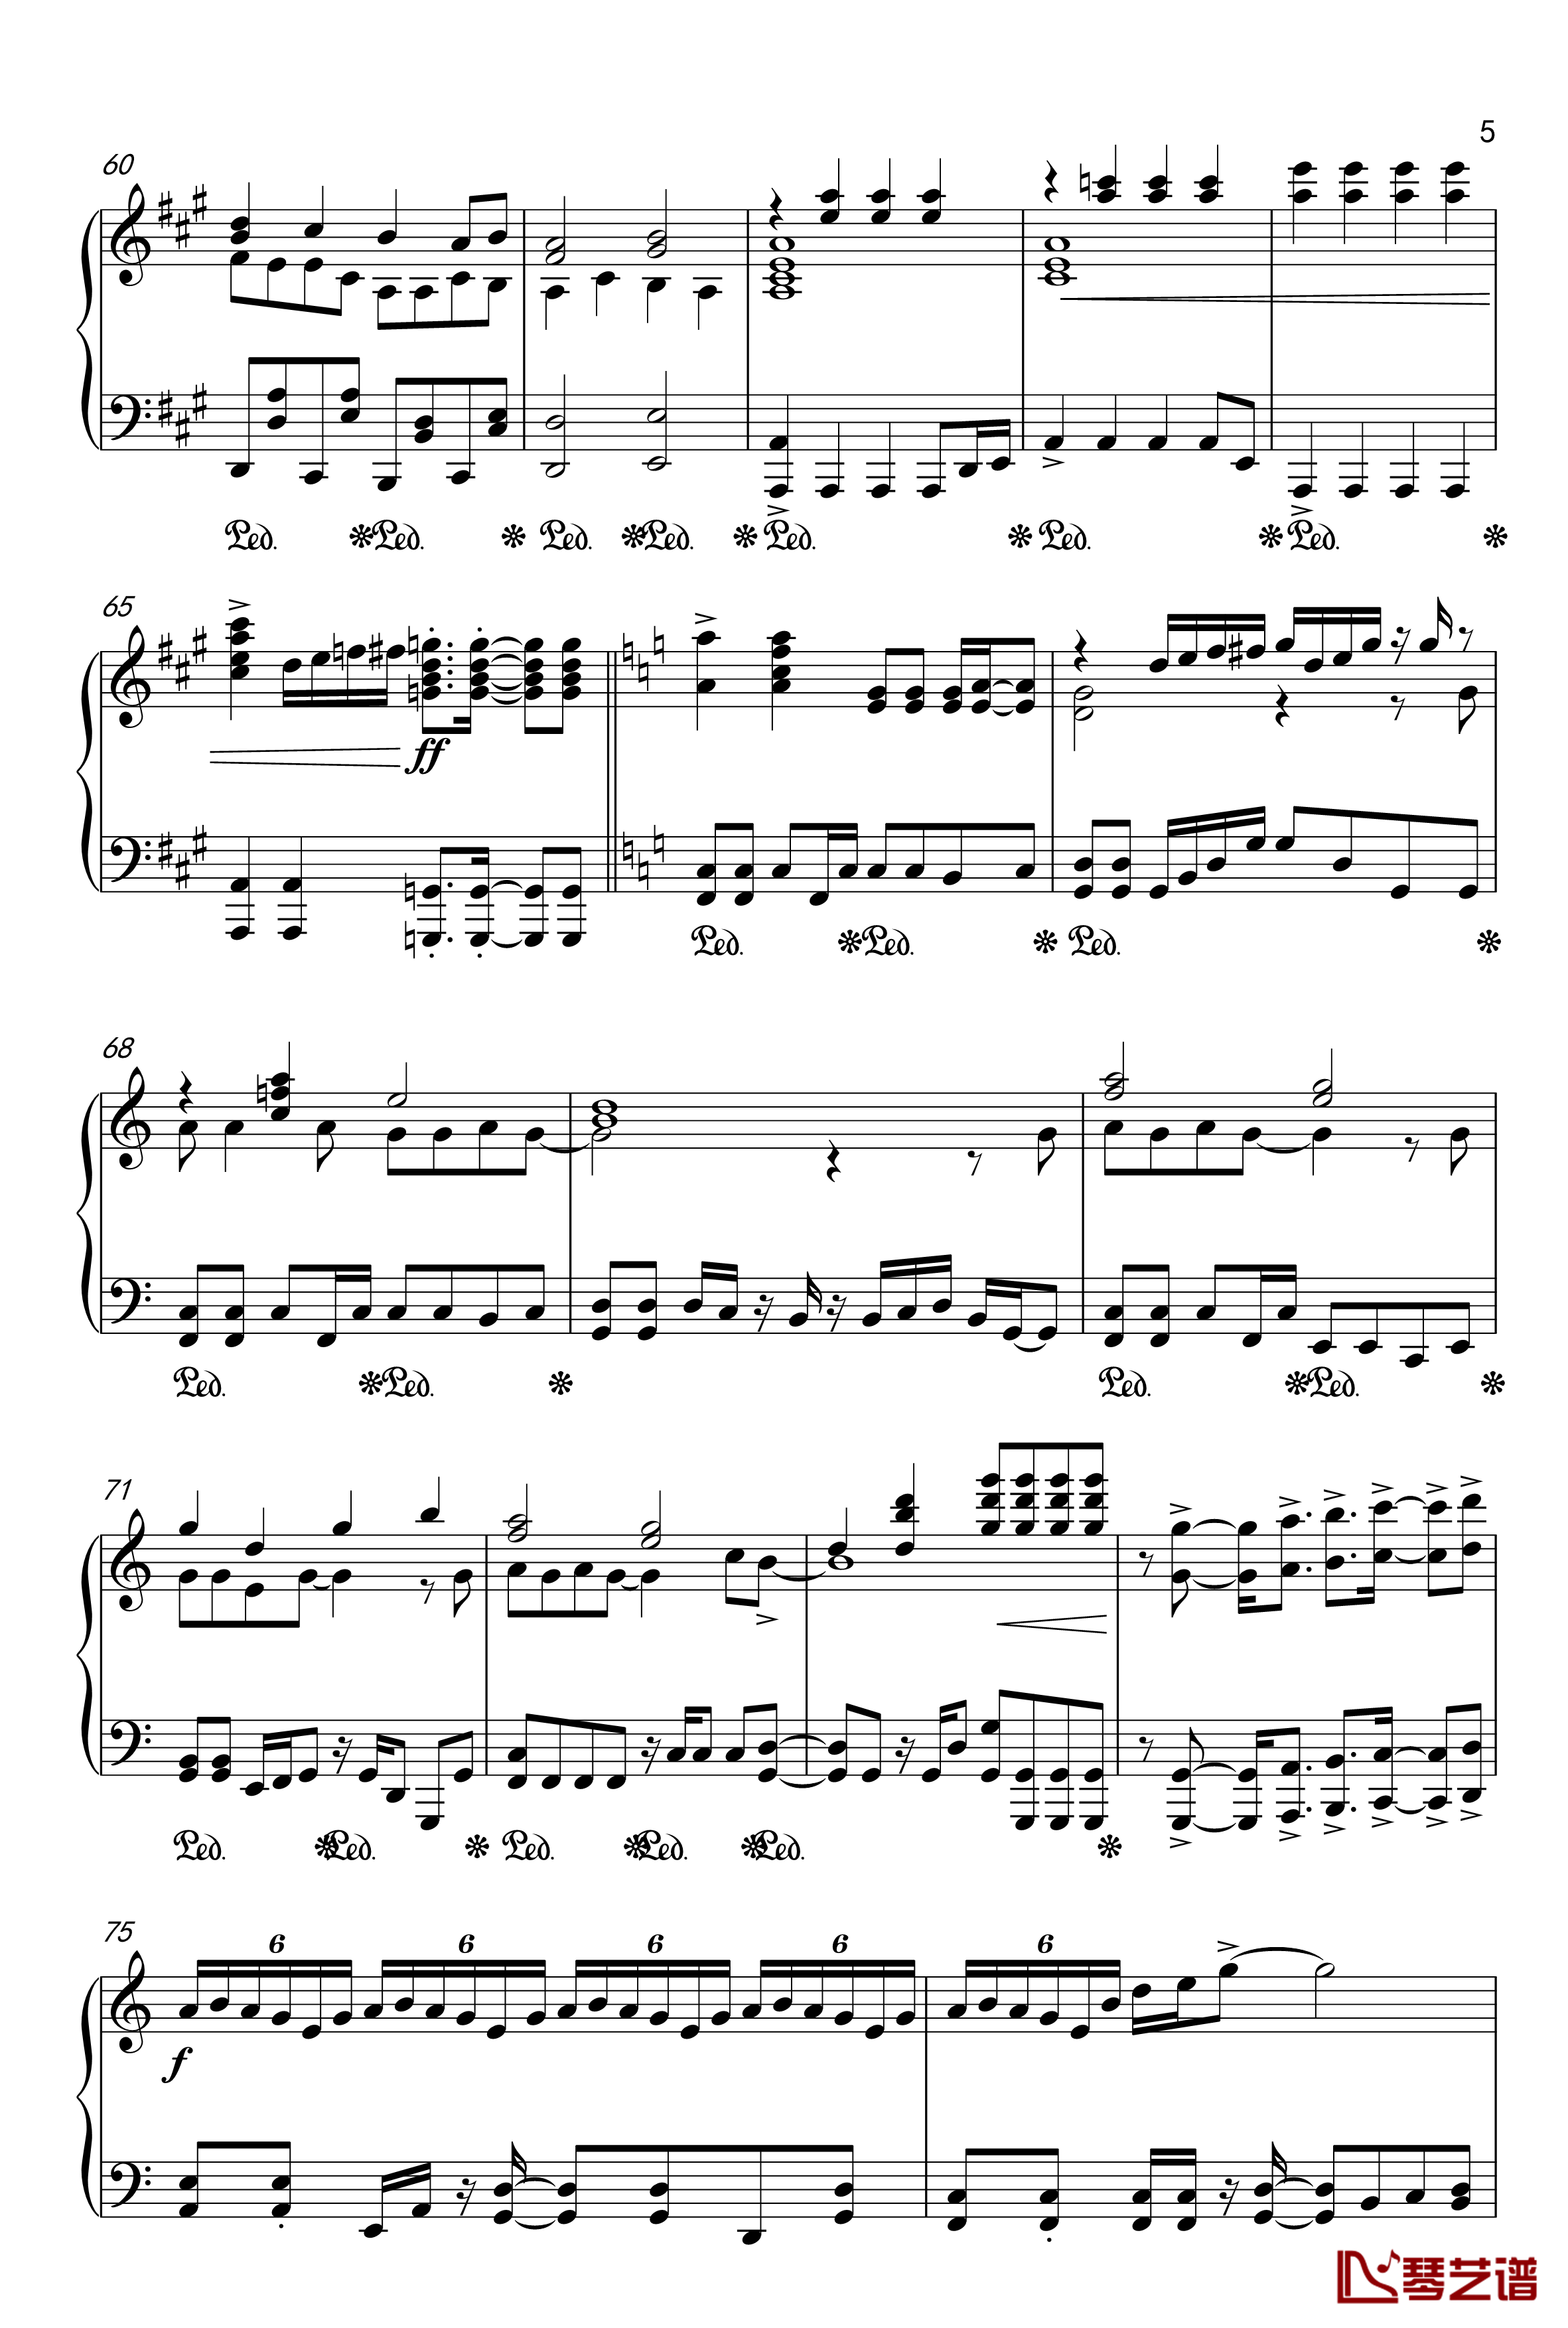 目标是神奇宝贝大师钢琴谱-20周年纪念版5